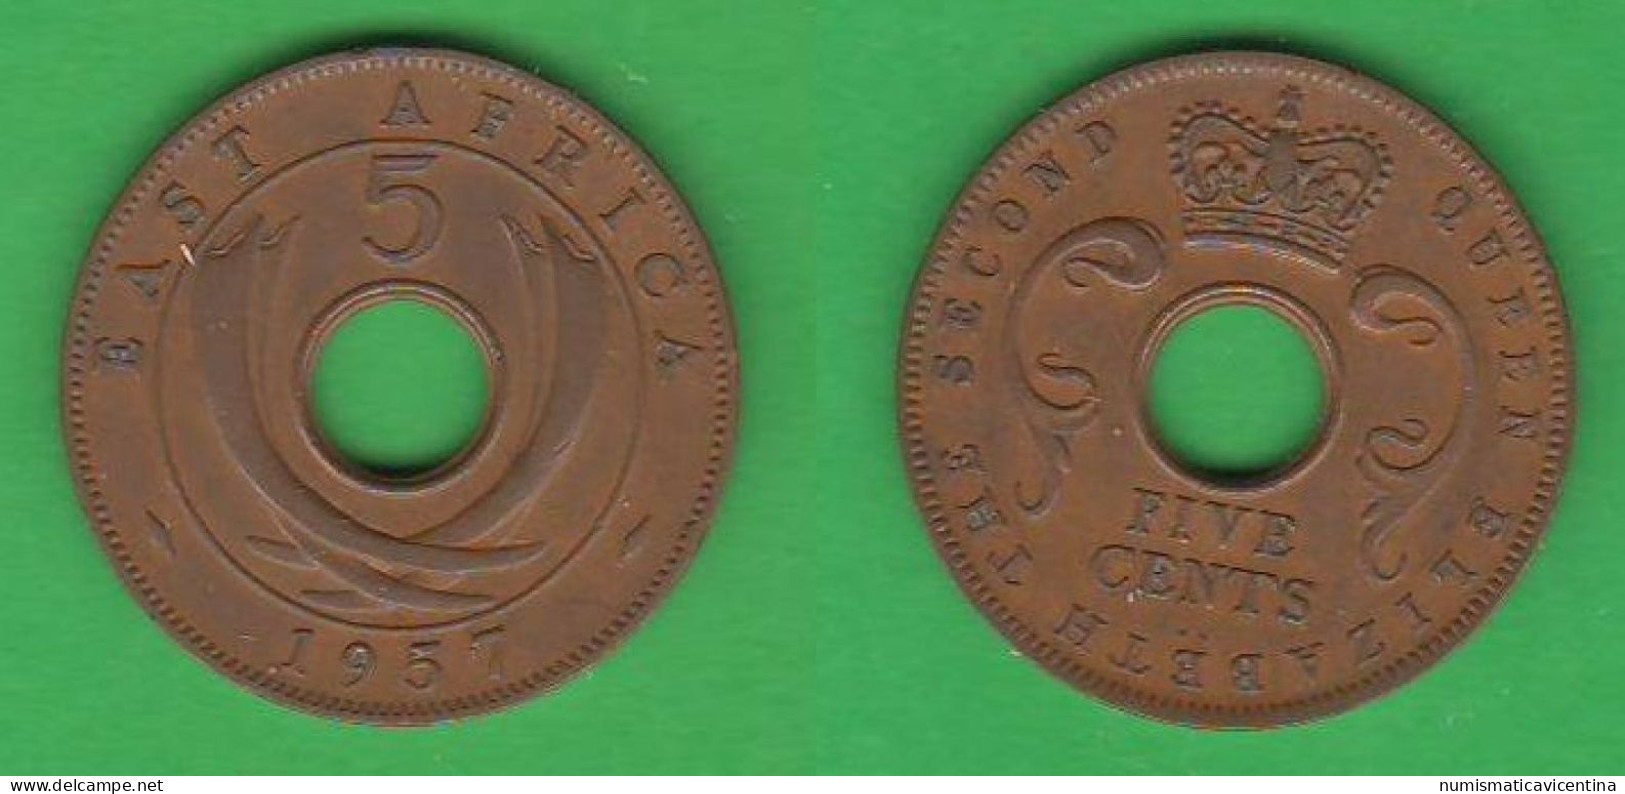 British East Africa 5 Cents 1957 KN Birmingham Mint Afrique Orientale Britannique - Britische Kolonie